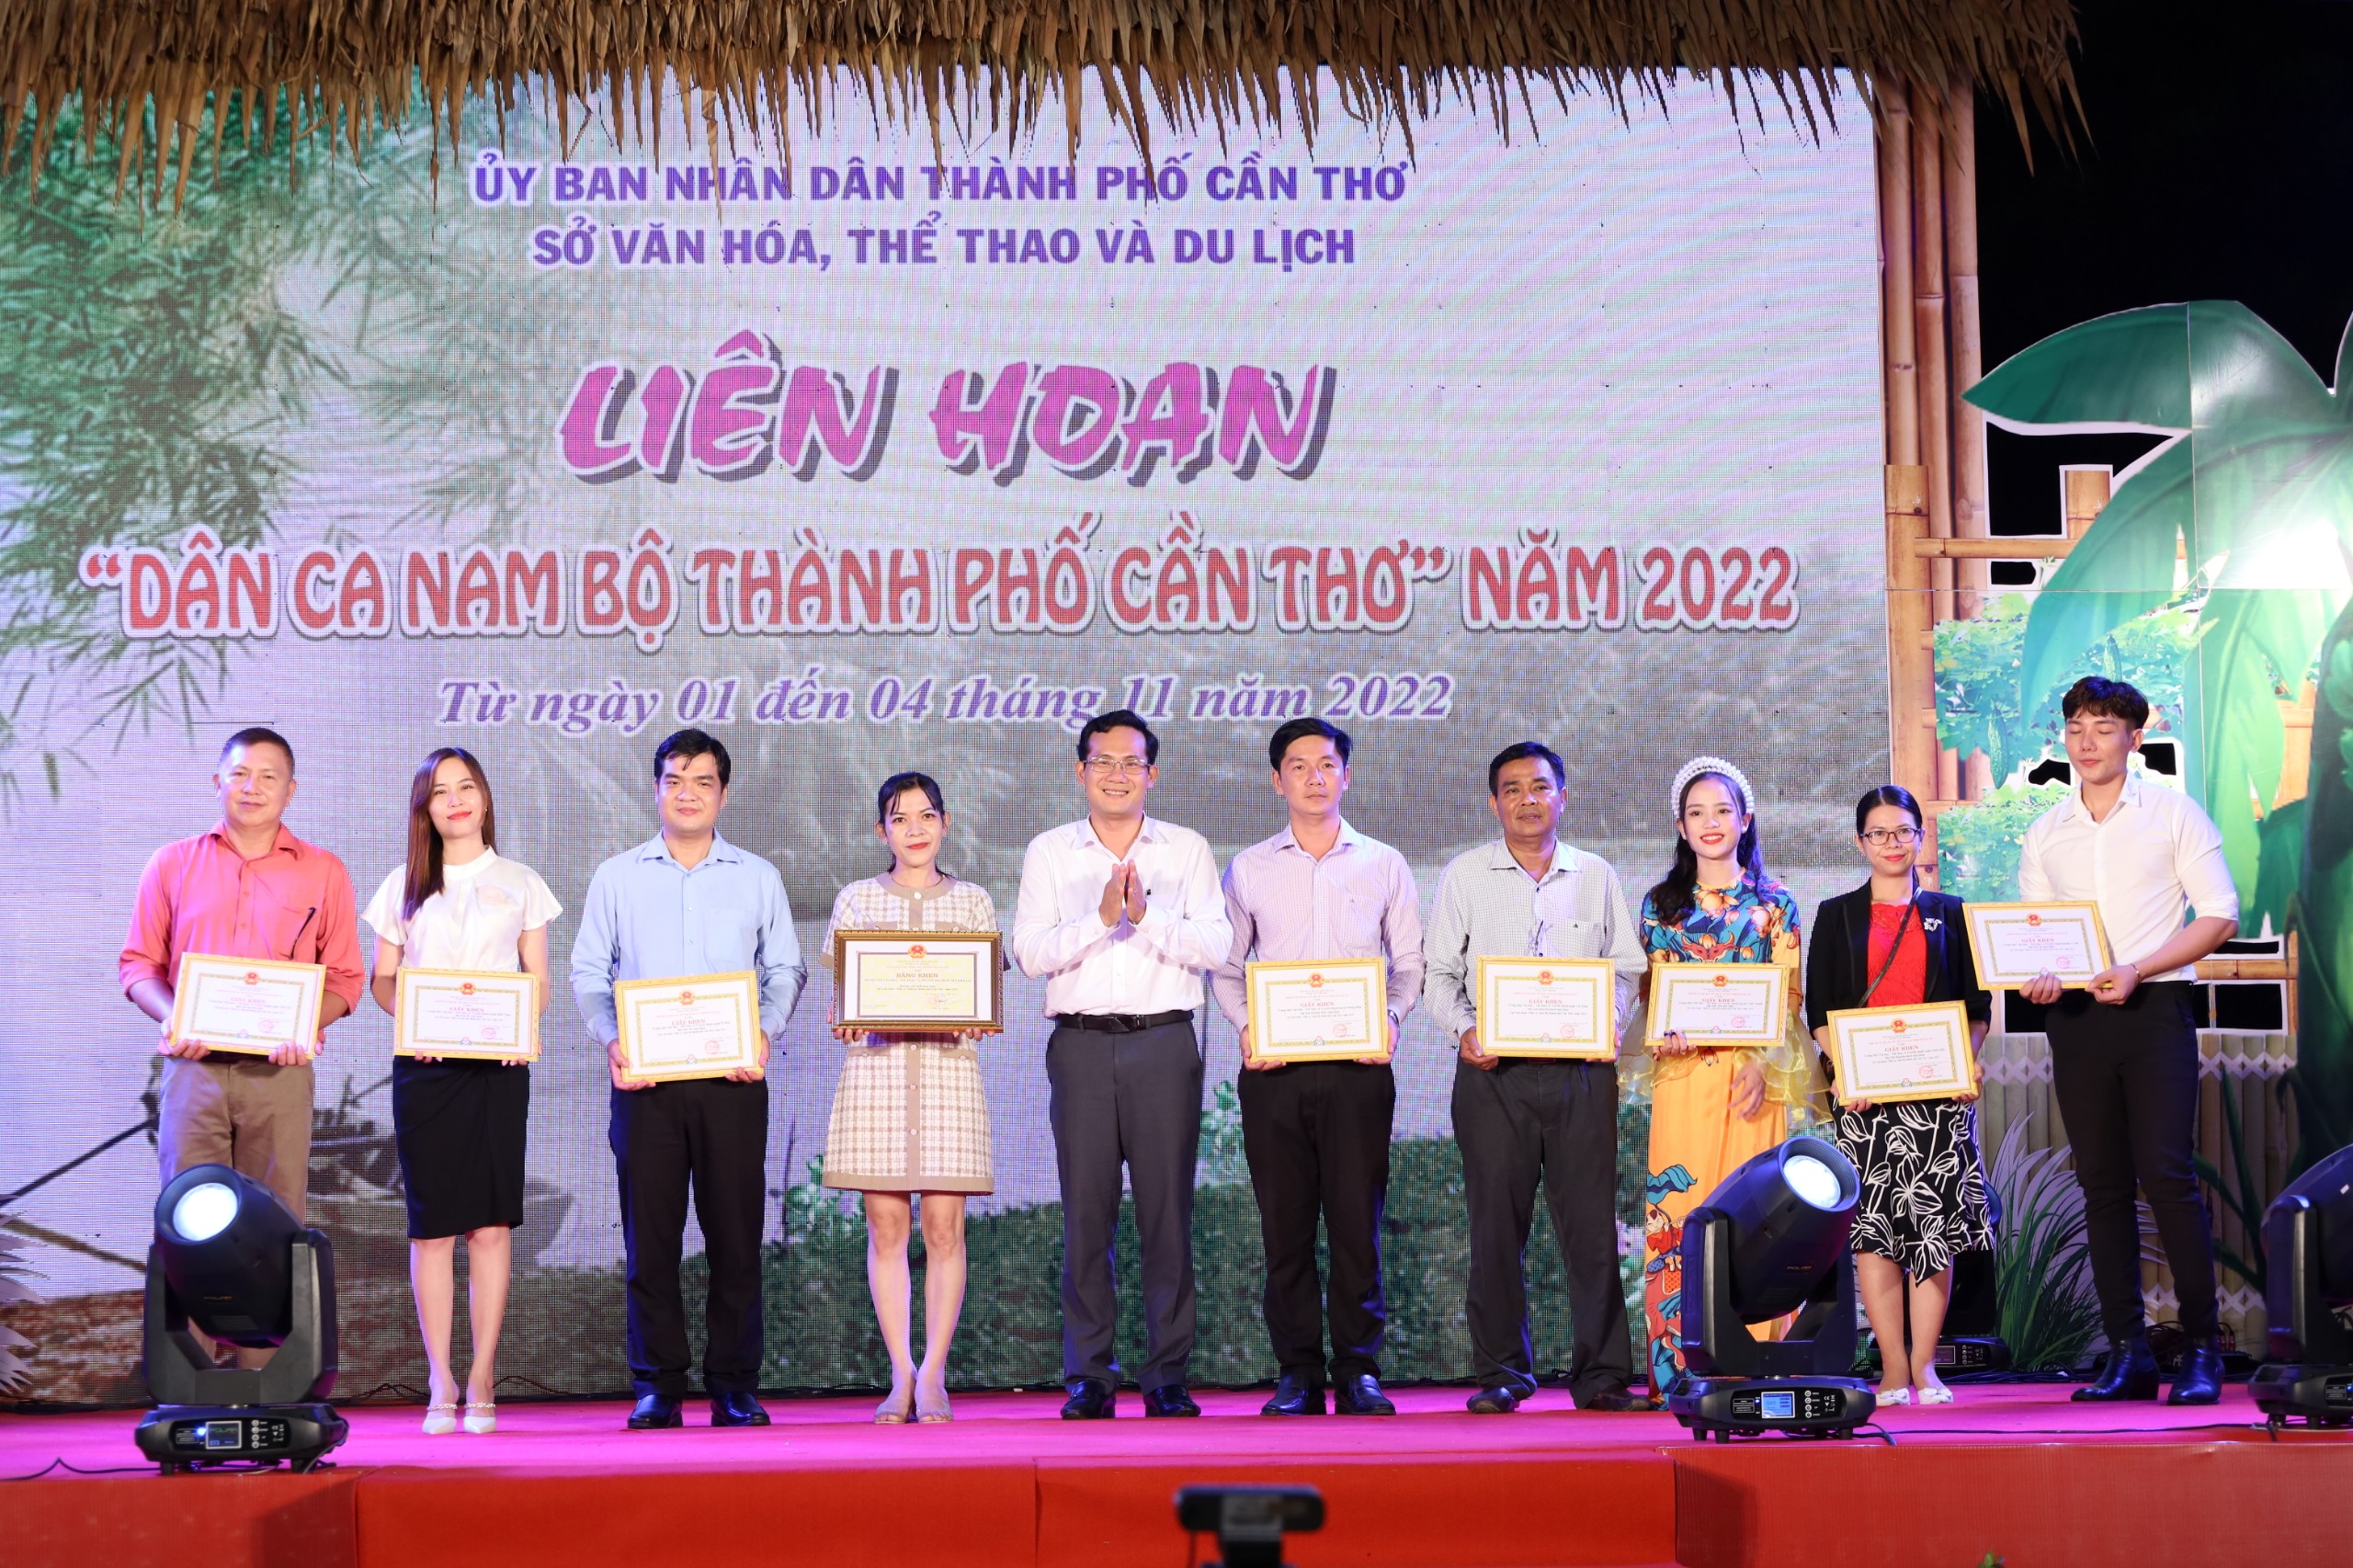 Ông Nguyễn Minh Tuấn - Giám đốc Sở Văn hóa – Thể thao và Du lịch TP. Cần Thơ trao giải toàn đoàn cho các đơn vị.